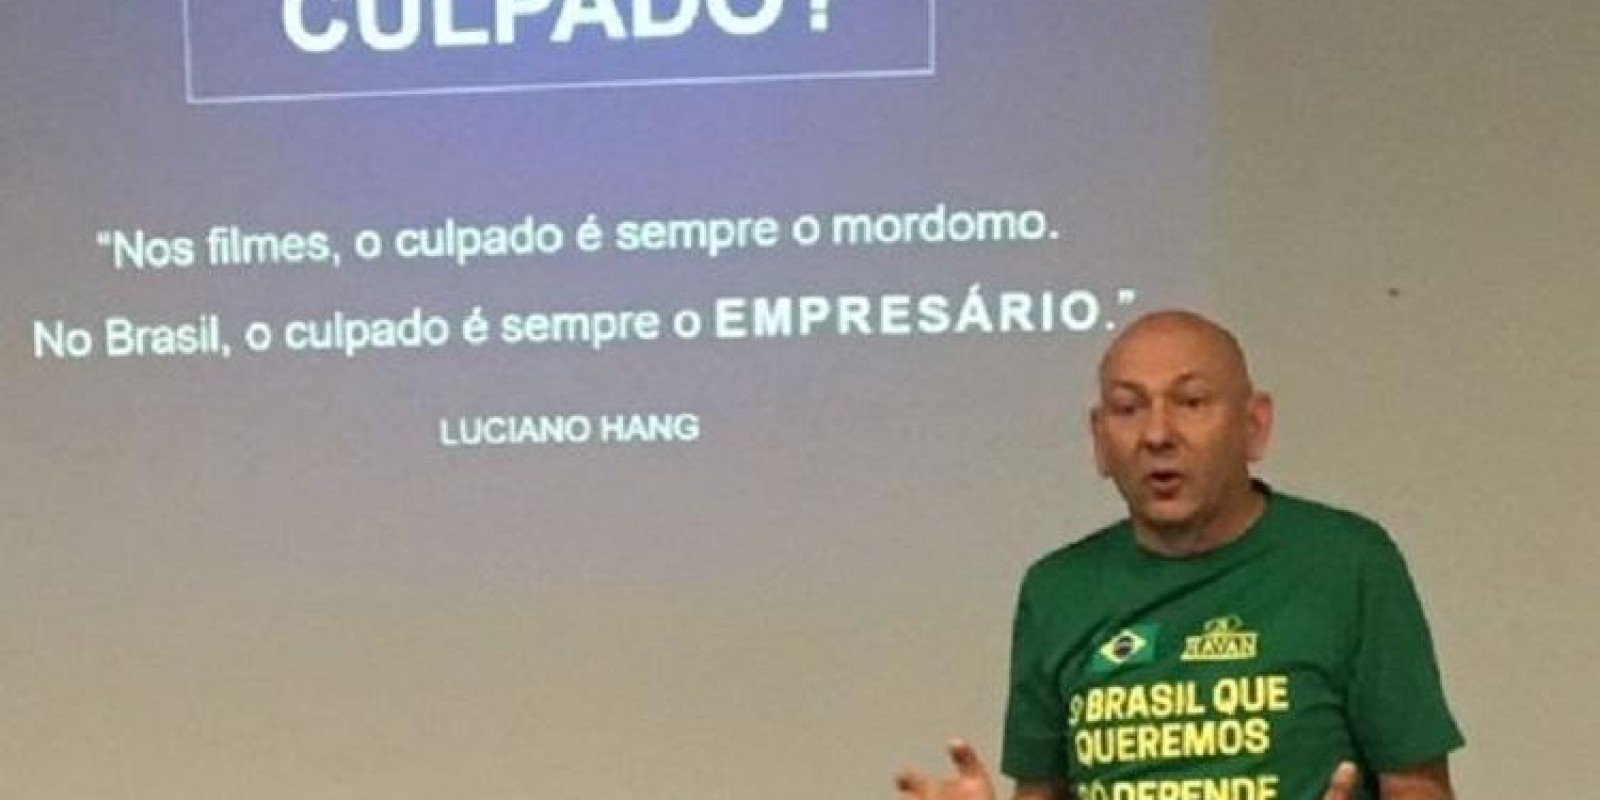 Luciano Hang hoje na Câmara de Vereadores de Joinville